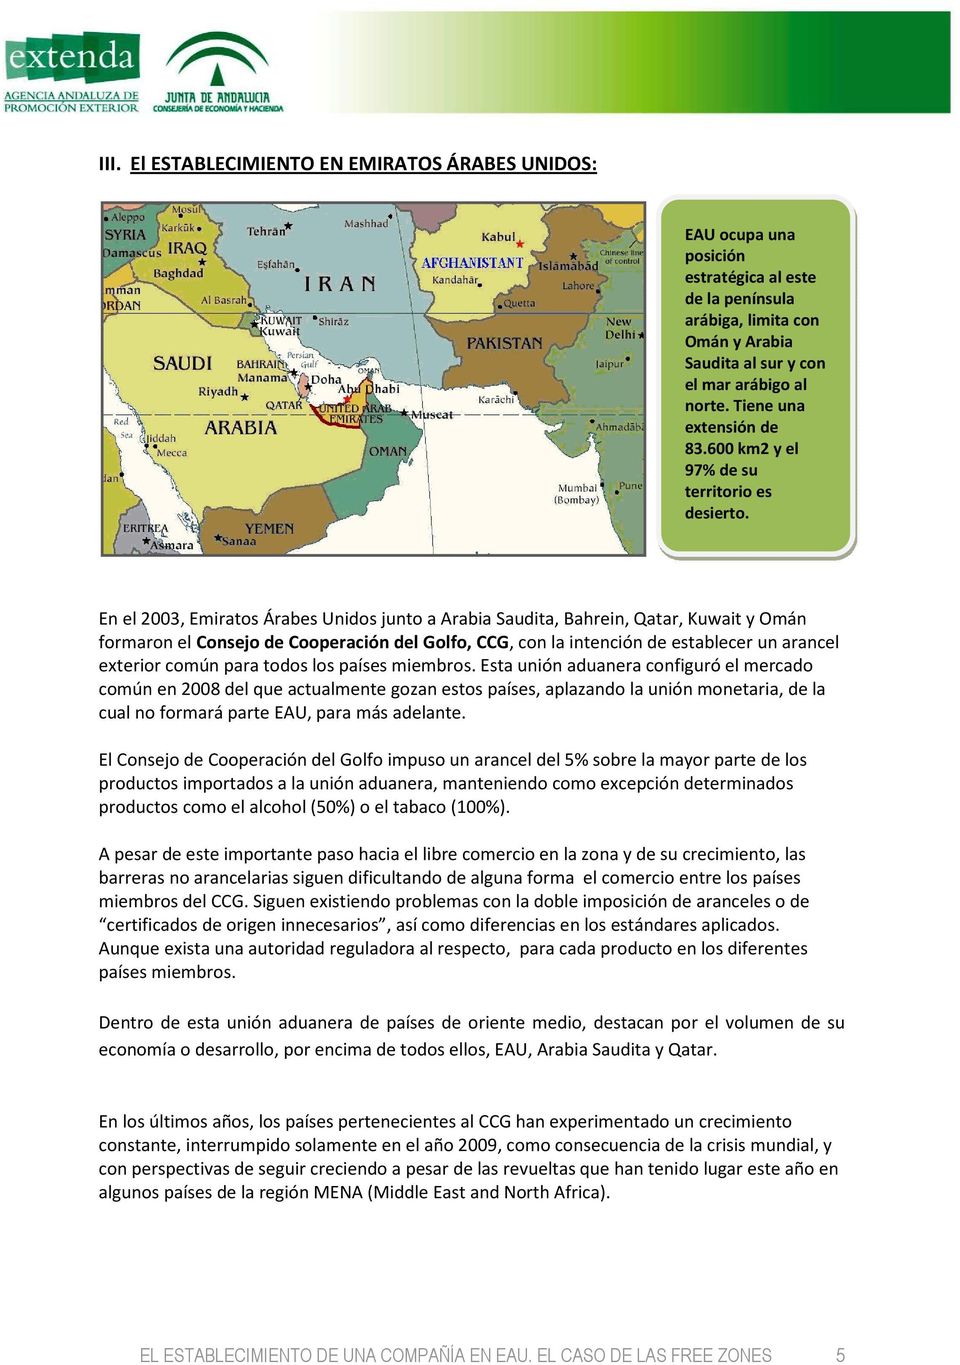 En el 2003, Emiratos Árabes Unidos junto a Arabia Saudita, Bahrein, Qatar, Kuwait y Omán formaron el Consejo de Cooperación del Golfo, CCG, con la intención de establecer un arancel exterior común